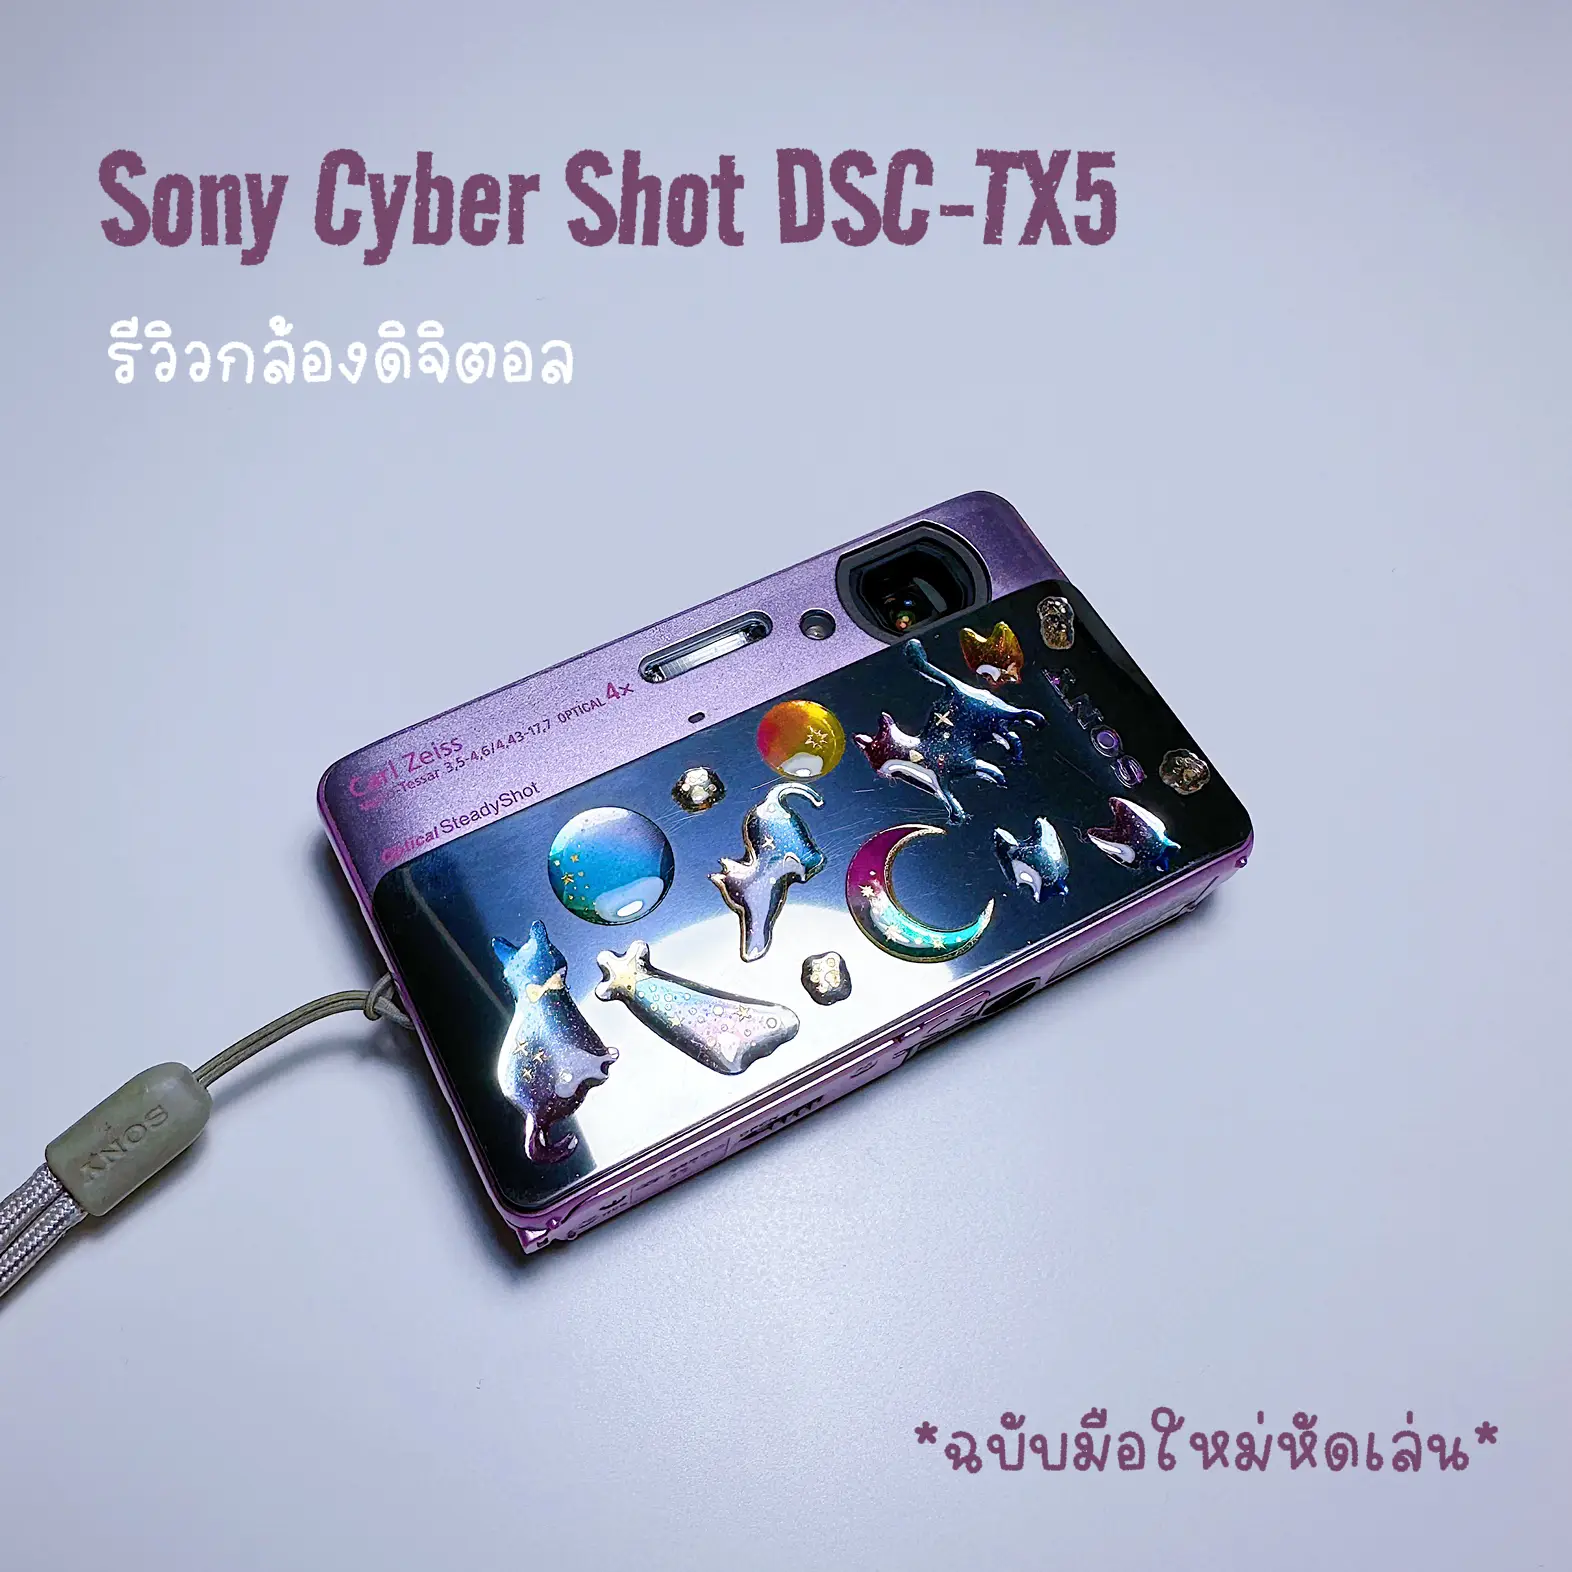 Sony Cyber-shot DSC-TX5 Review